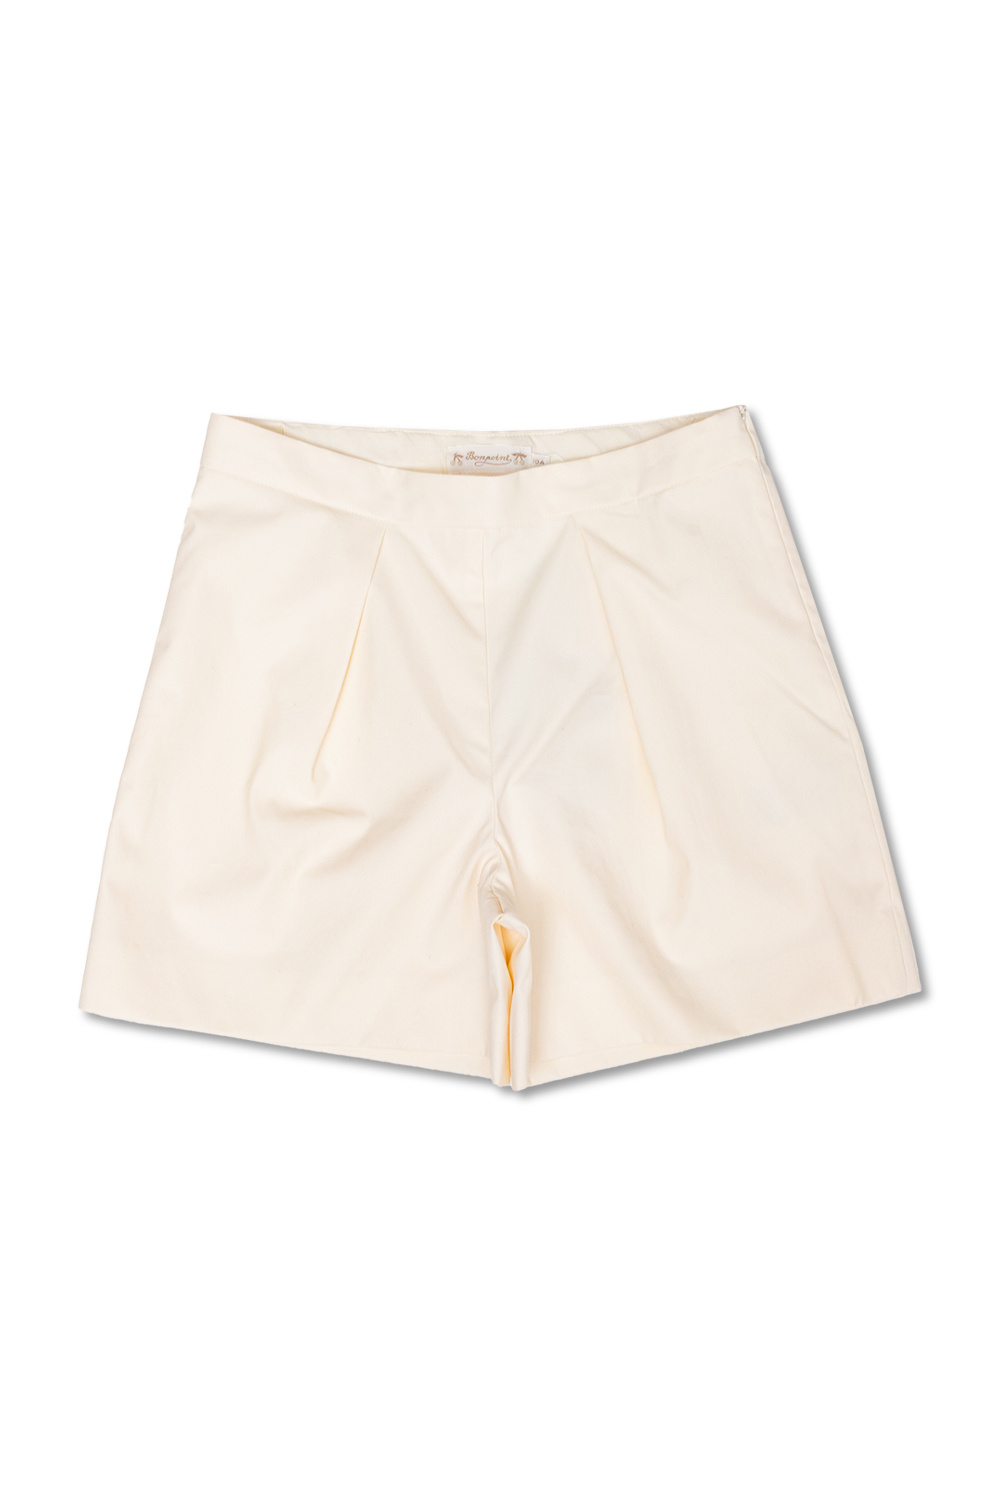 Bonpoint  Skyler shorts with hidden zip